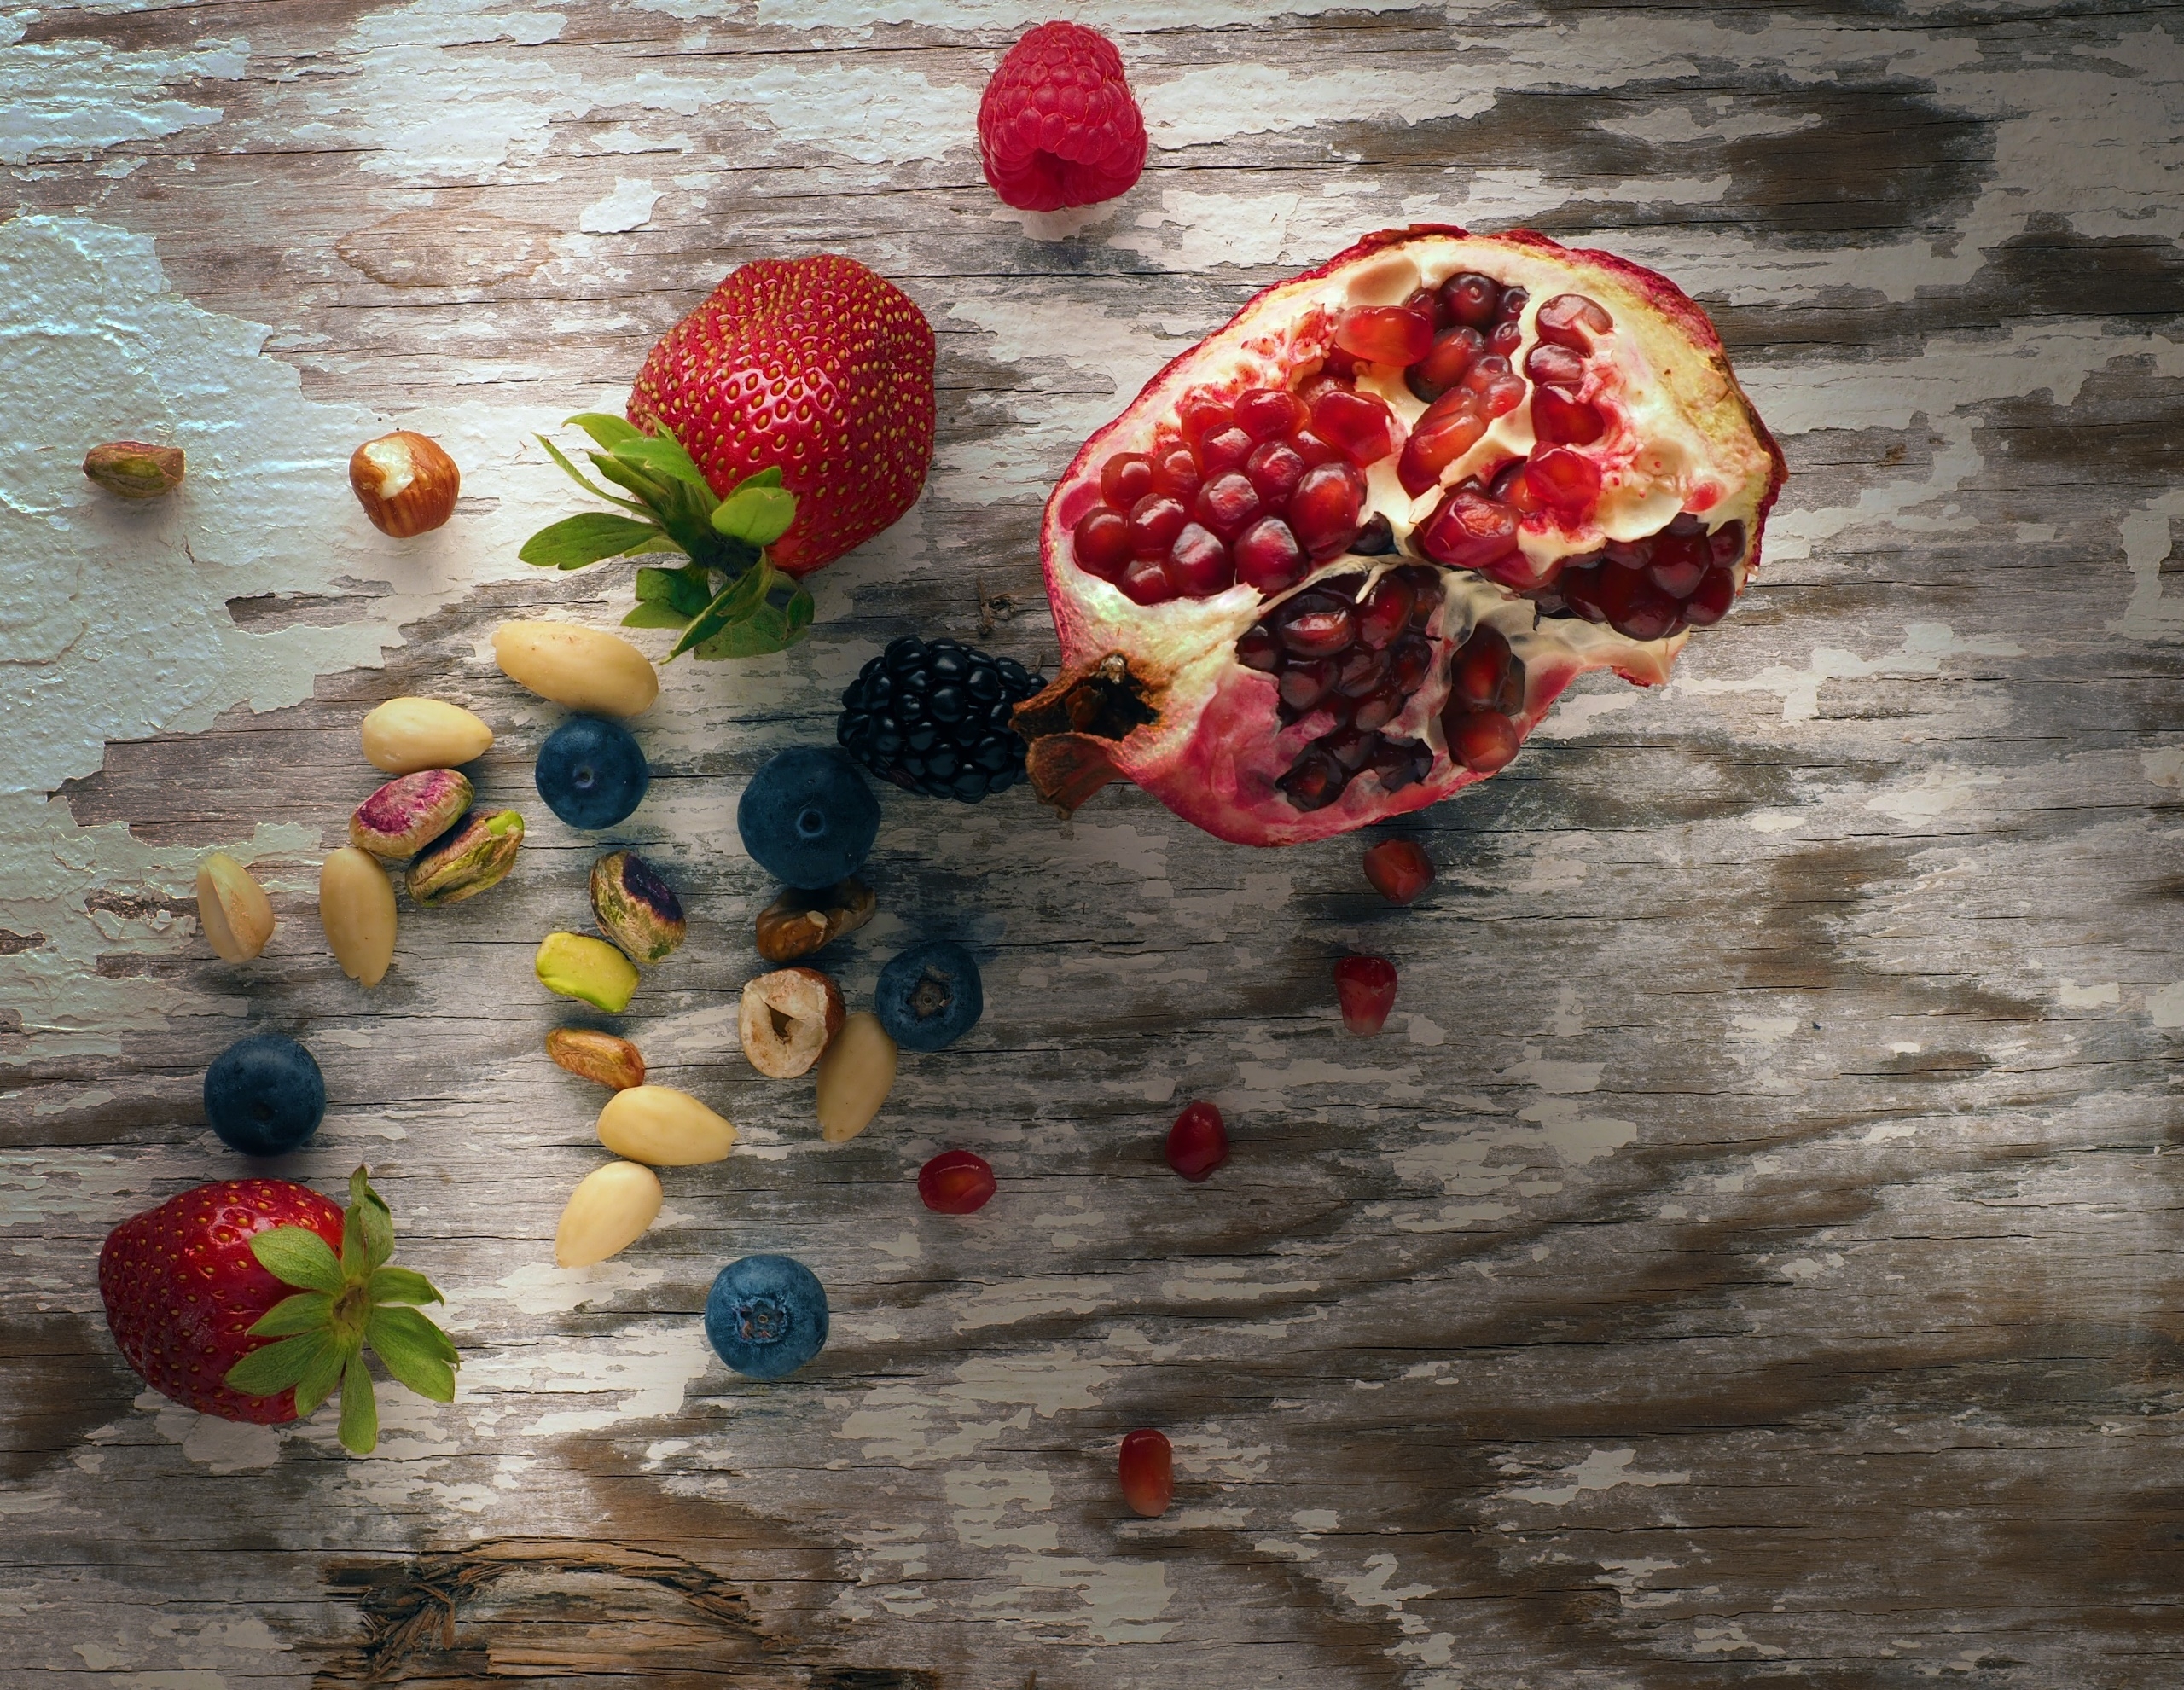 Фото ягоды фрукты обои гранат - бесплатные картинки на Fonwall